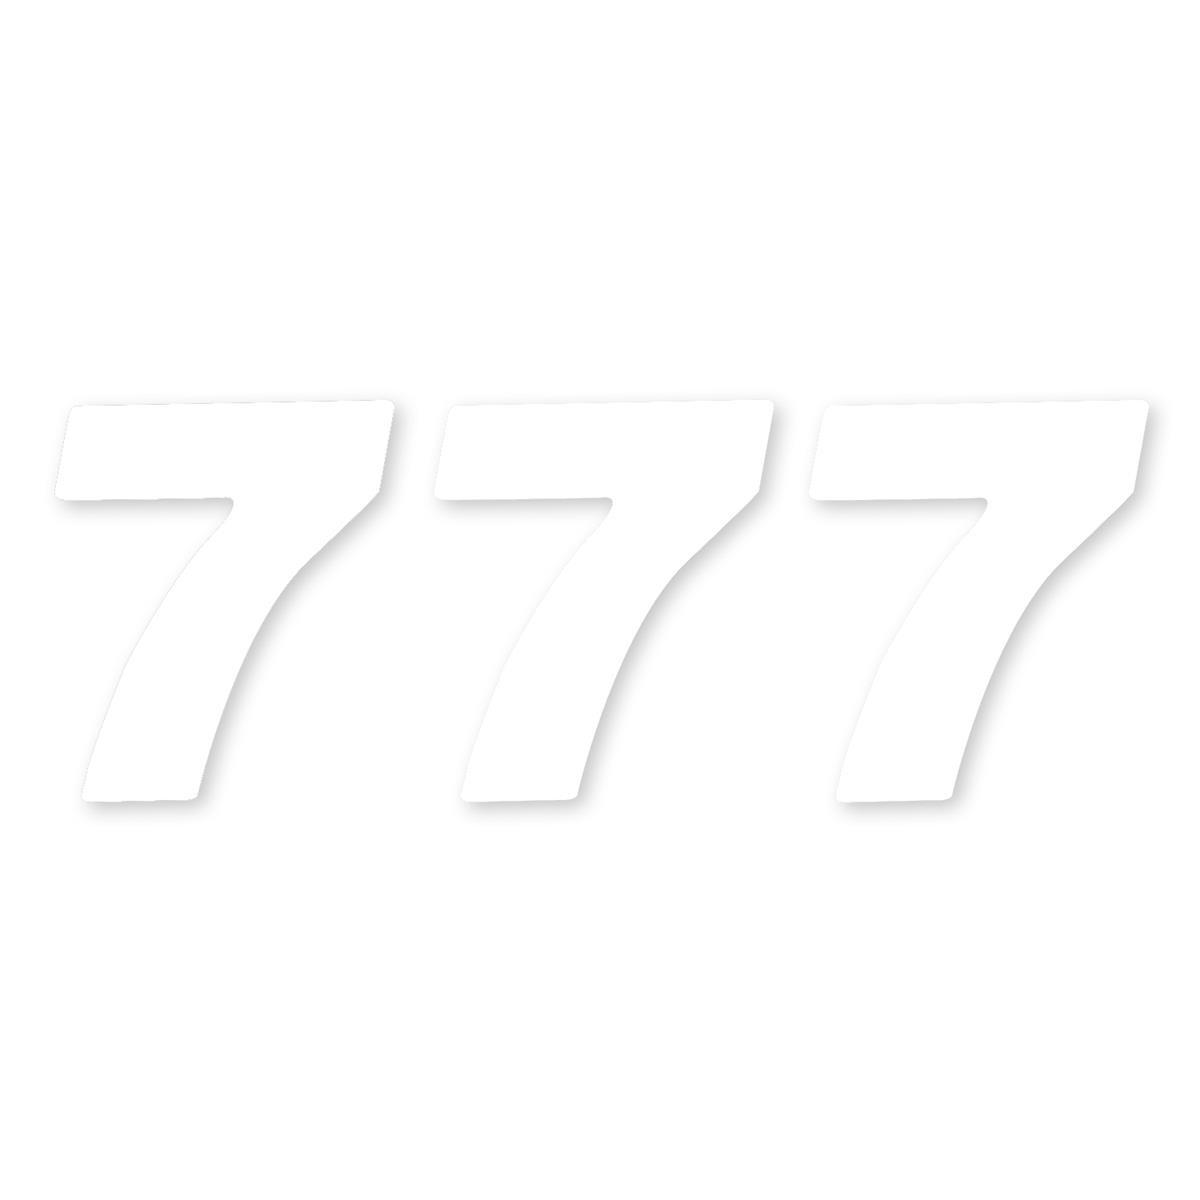 ZAP Kit Numéro Competition US-Style Numéro 7, 15 cm, Blanc, 3 pieces